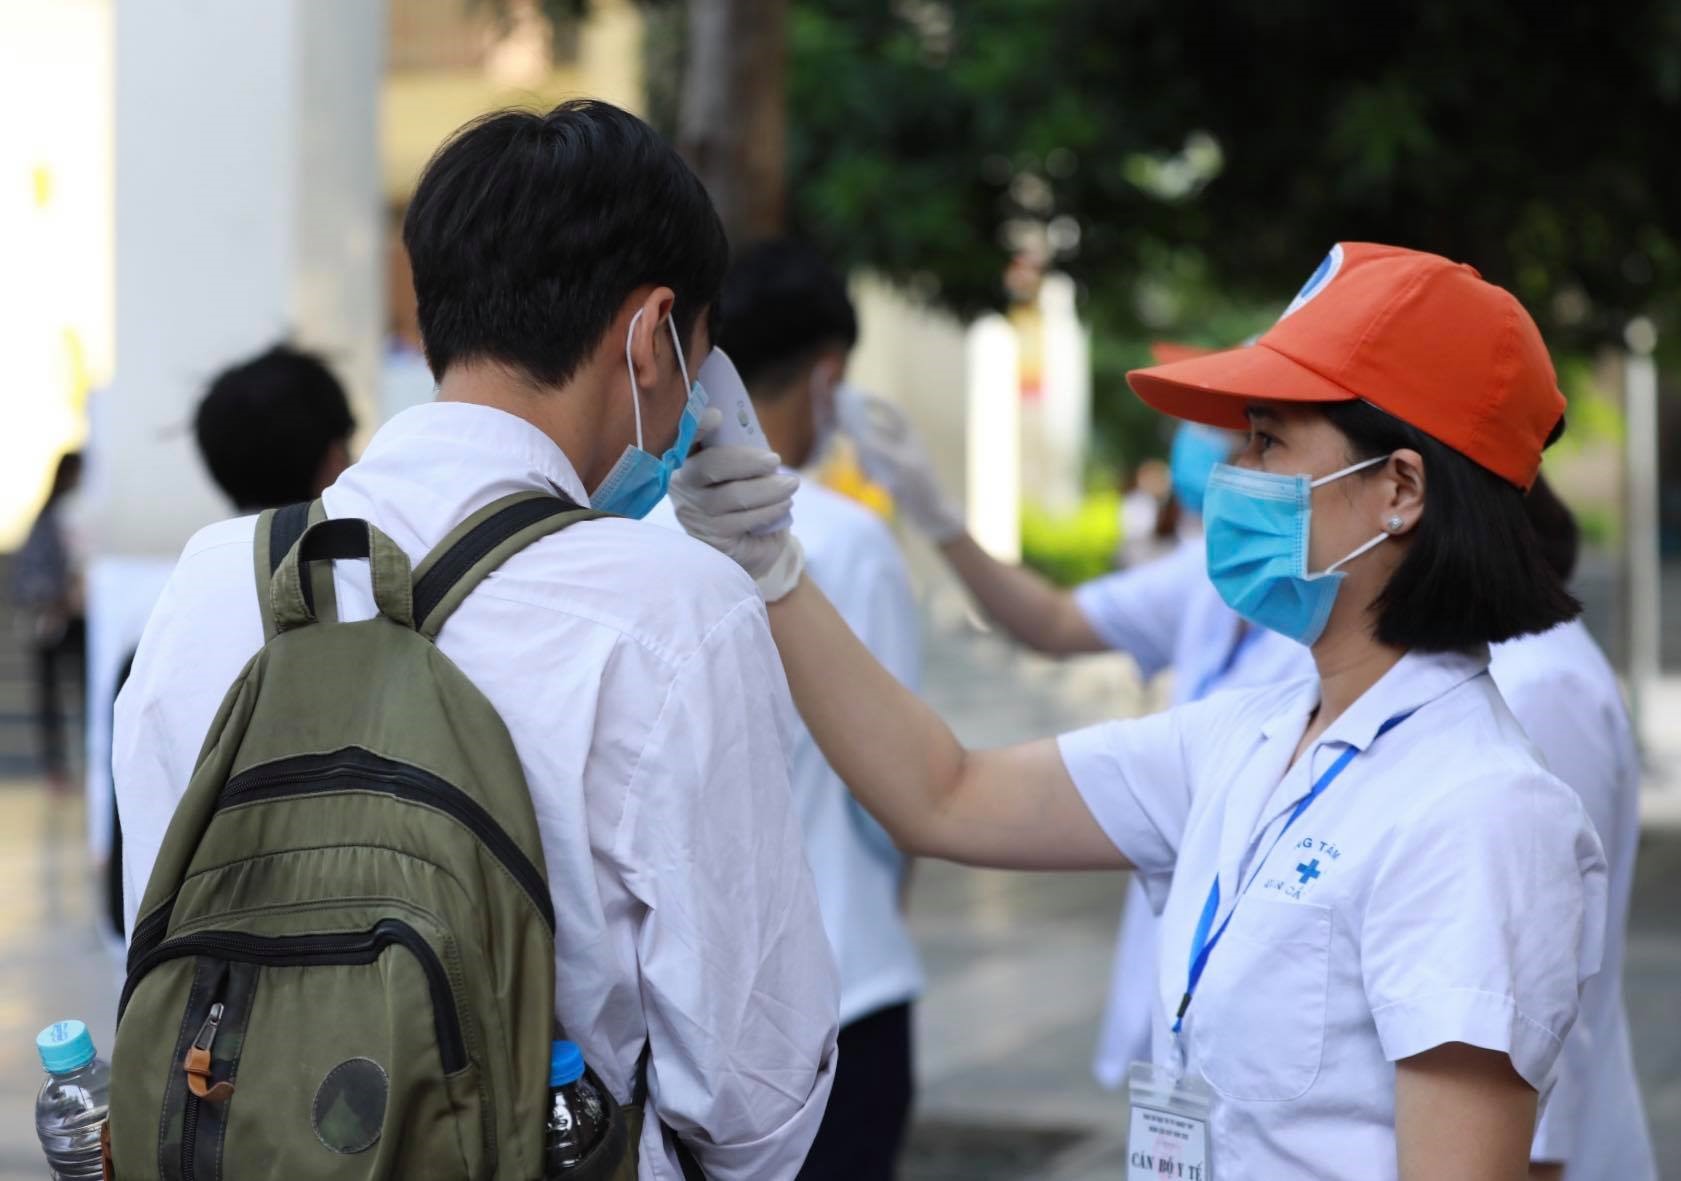 Thí sinh xếp hàng đo thân nhiệt trước khi vào phòng thi tại điểm Trường THCS Nghĩa Tân (Hà Nội). Ghi nhận của Hải Nguyễn sáng 10.8.